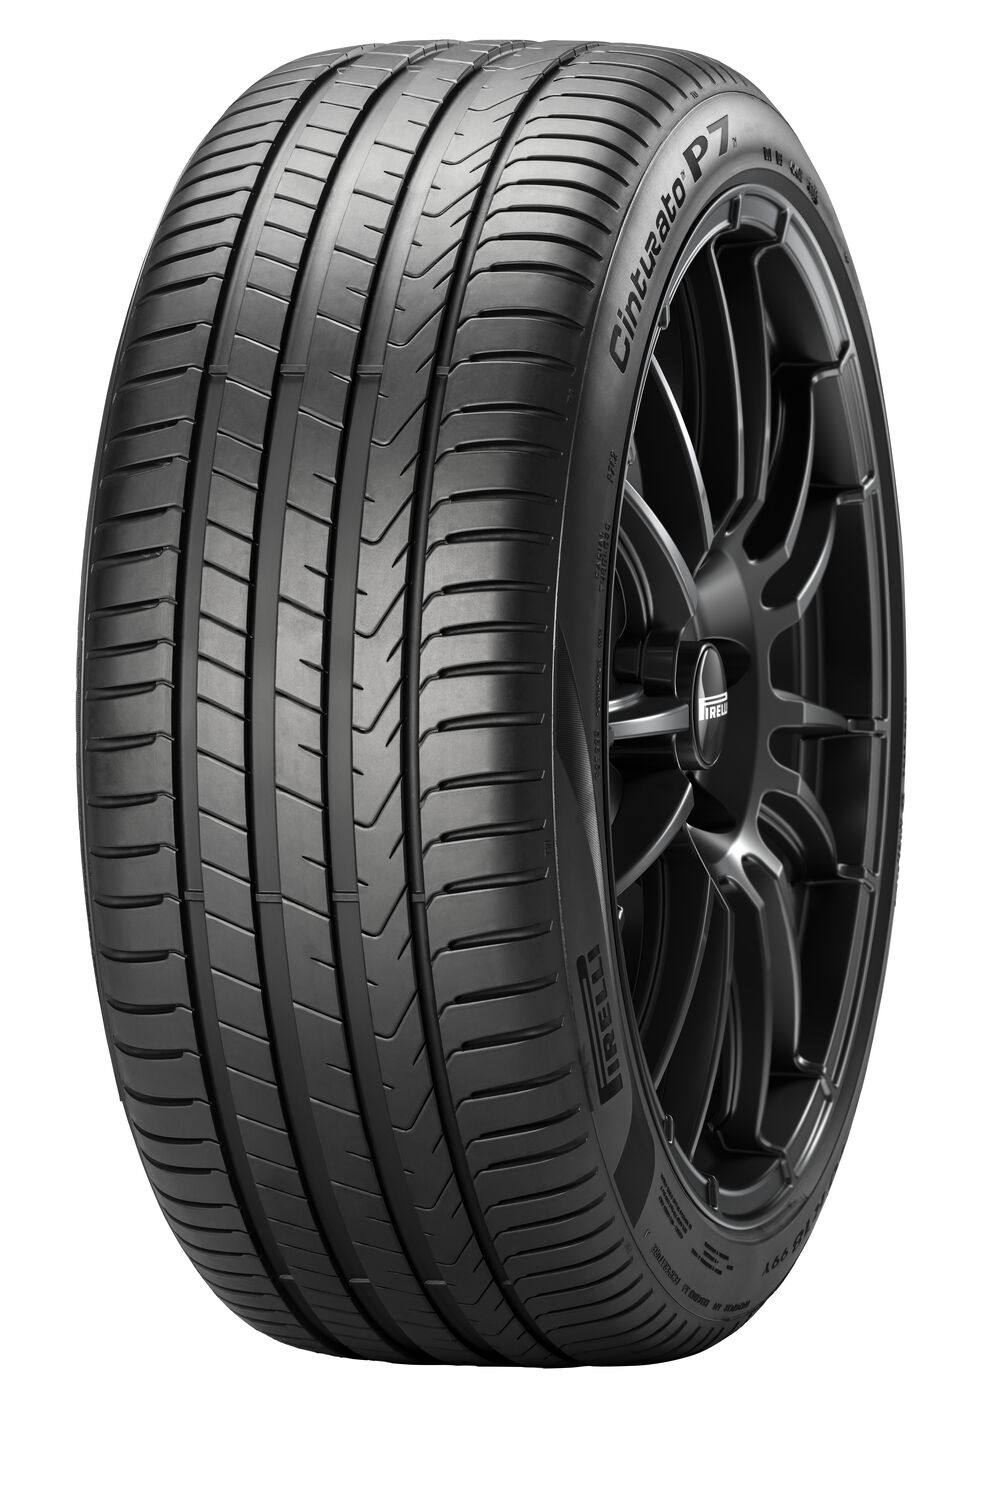 Gomme Nuove Pirelli 205/60 R16 92V Cinturato P7 P7C2 FSL pneumatici nuovi Estivo